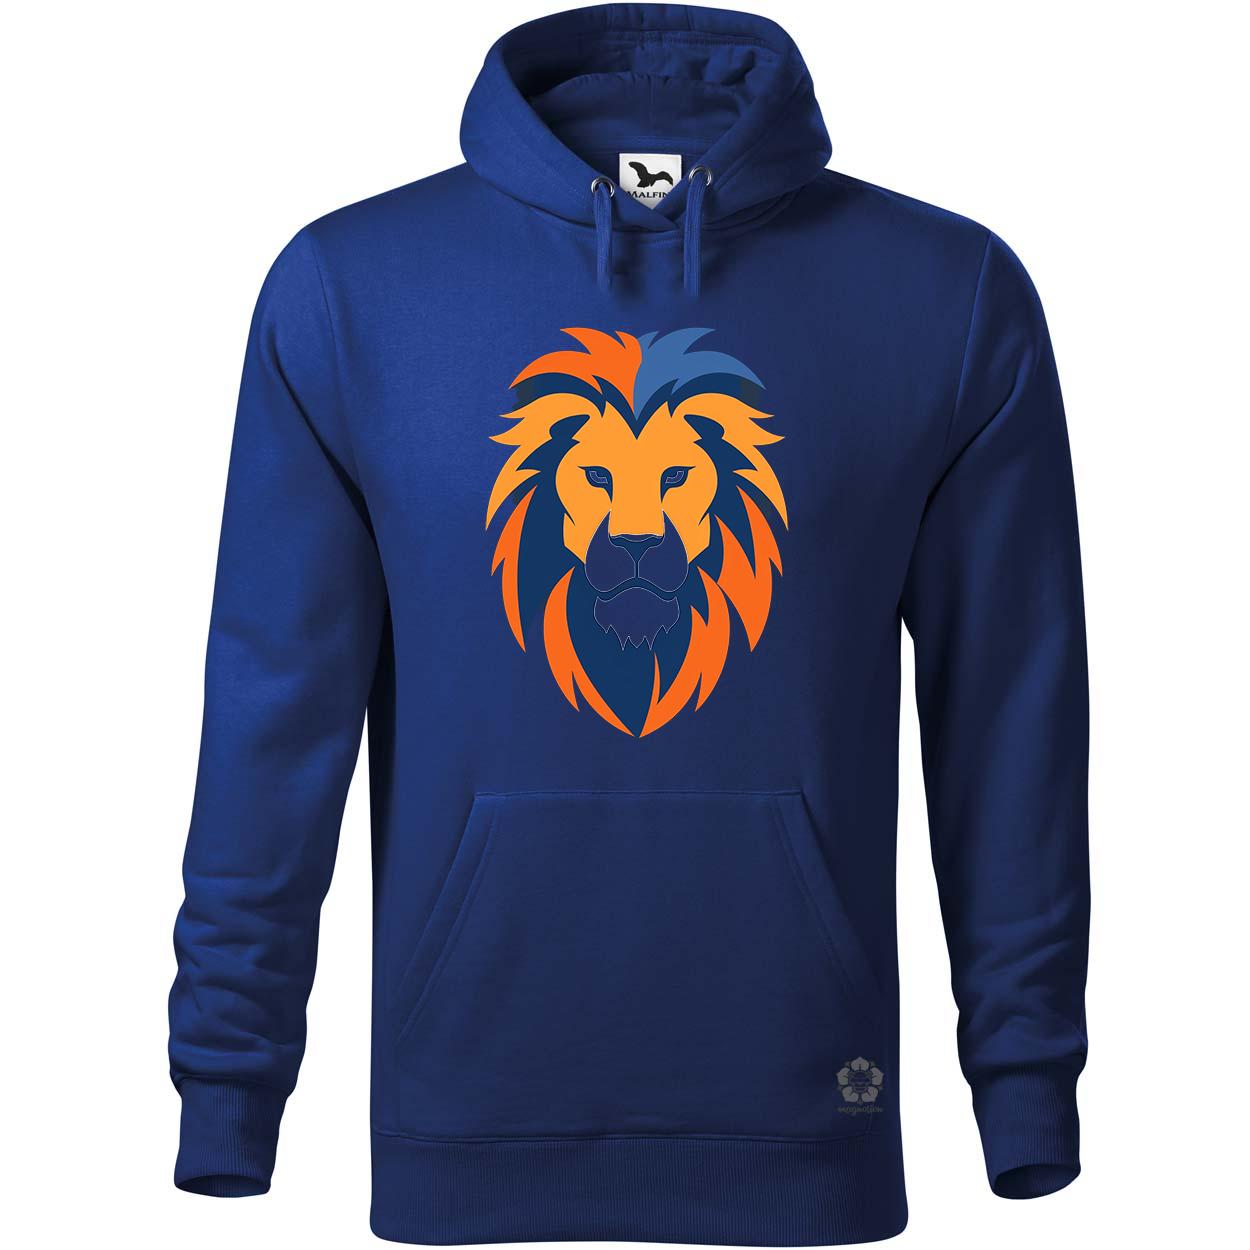 Narancs és kék oroszlán v1